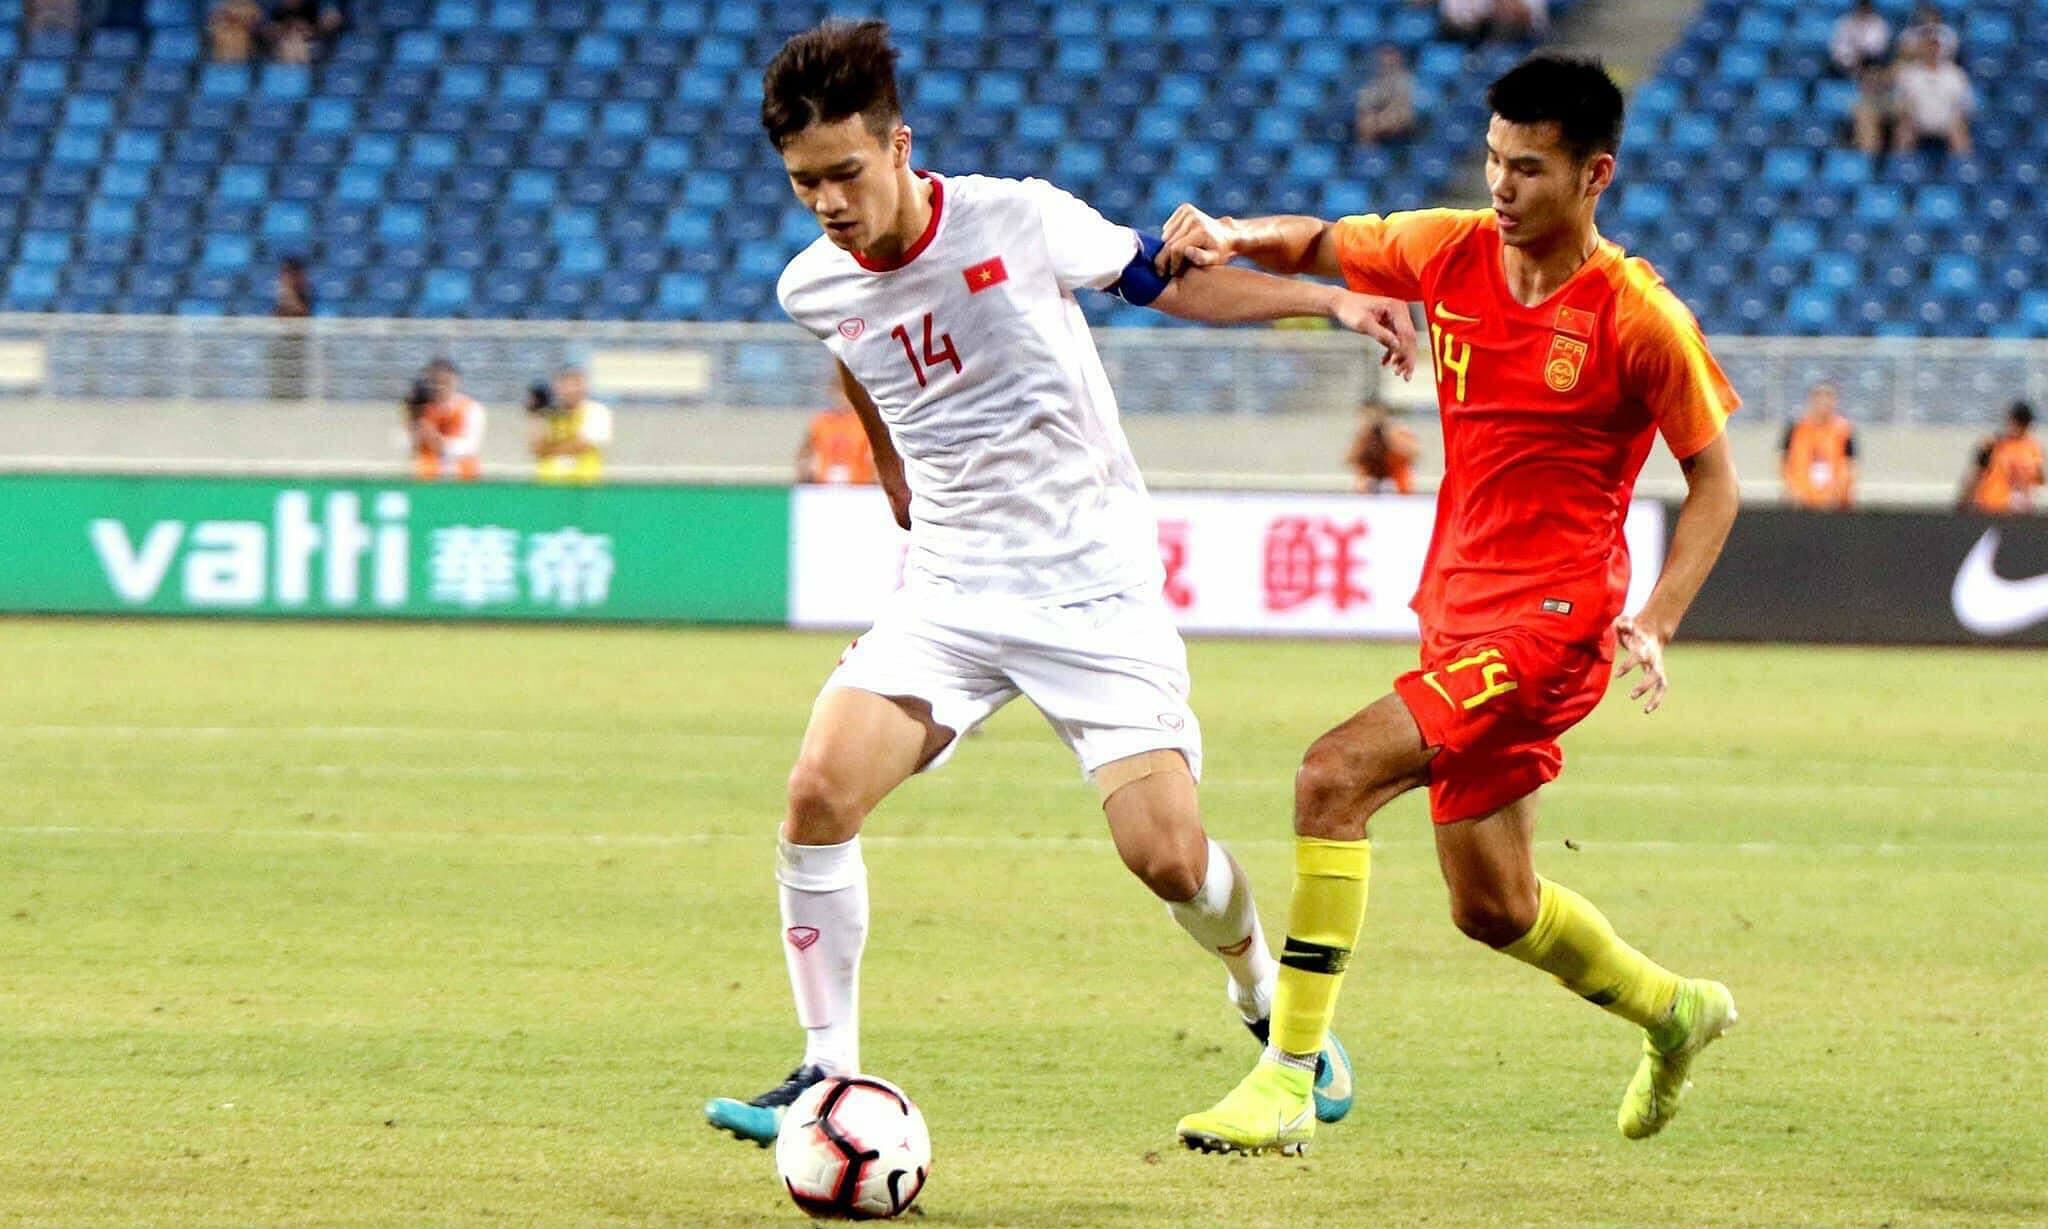 Trung Quốc nuôi hy vọng vào chung kết với 6 điểm trước Việt Nam